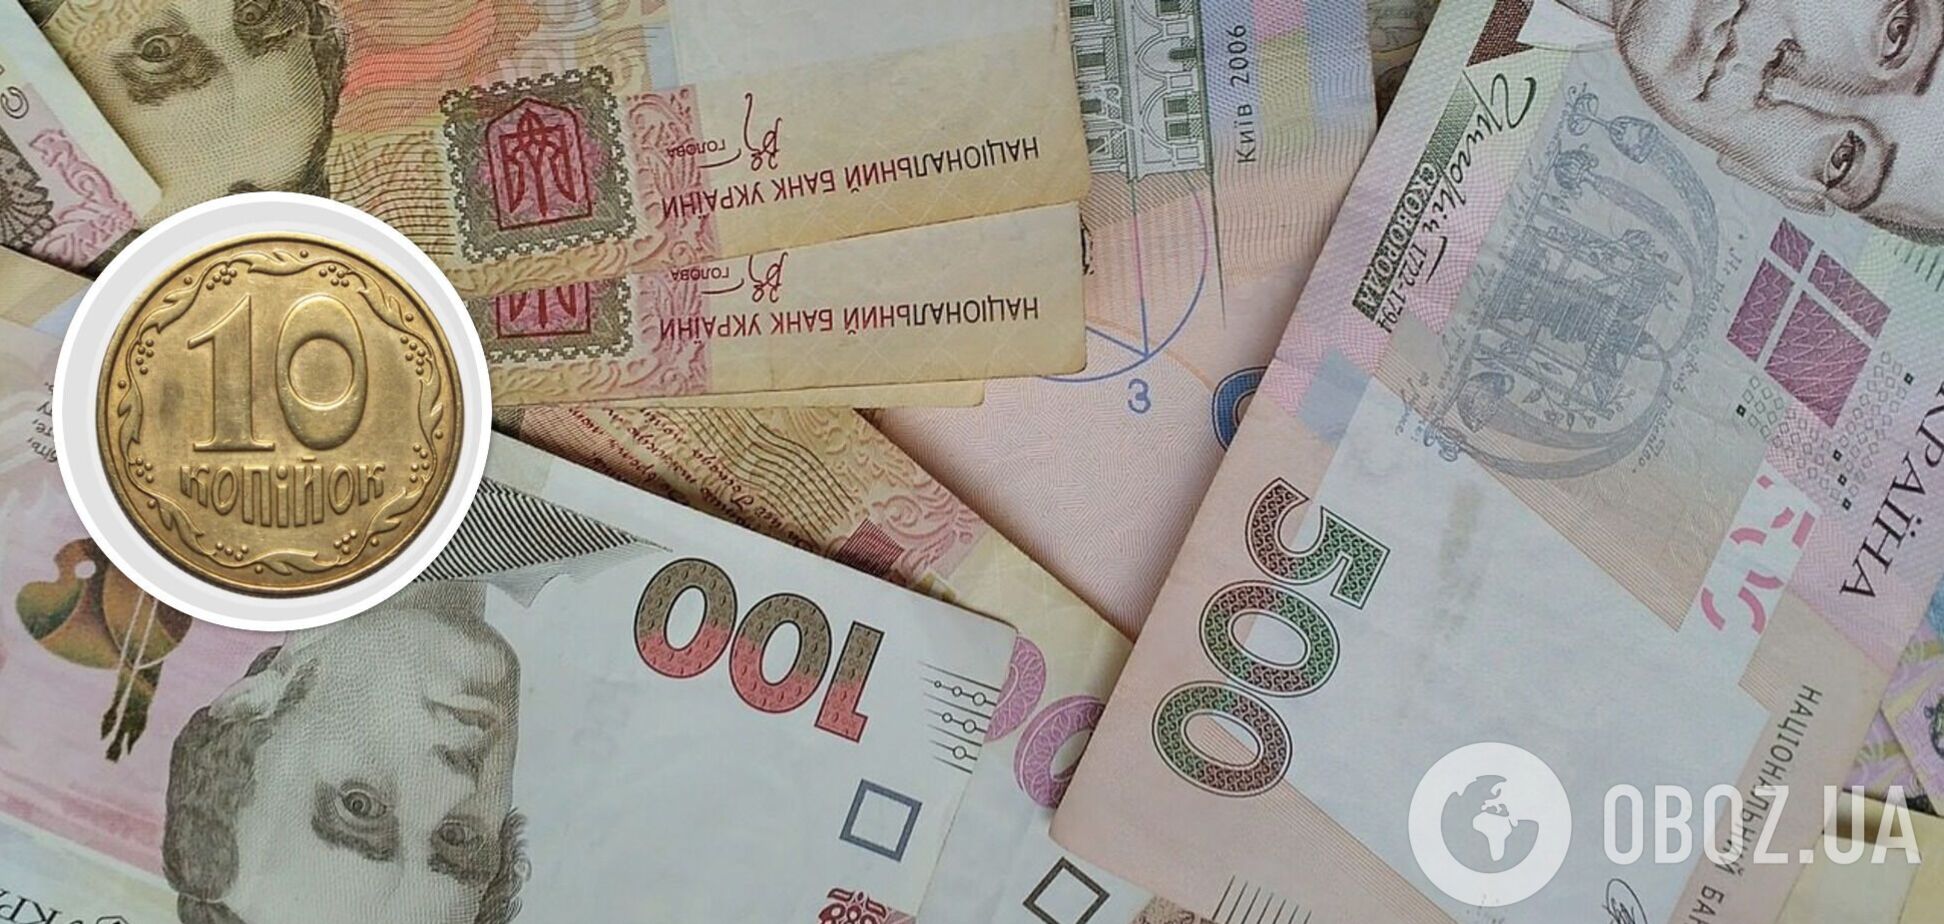 Колекціонери полюють на українські 10-копійчані монети